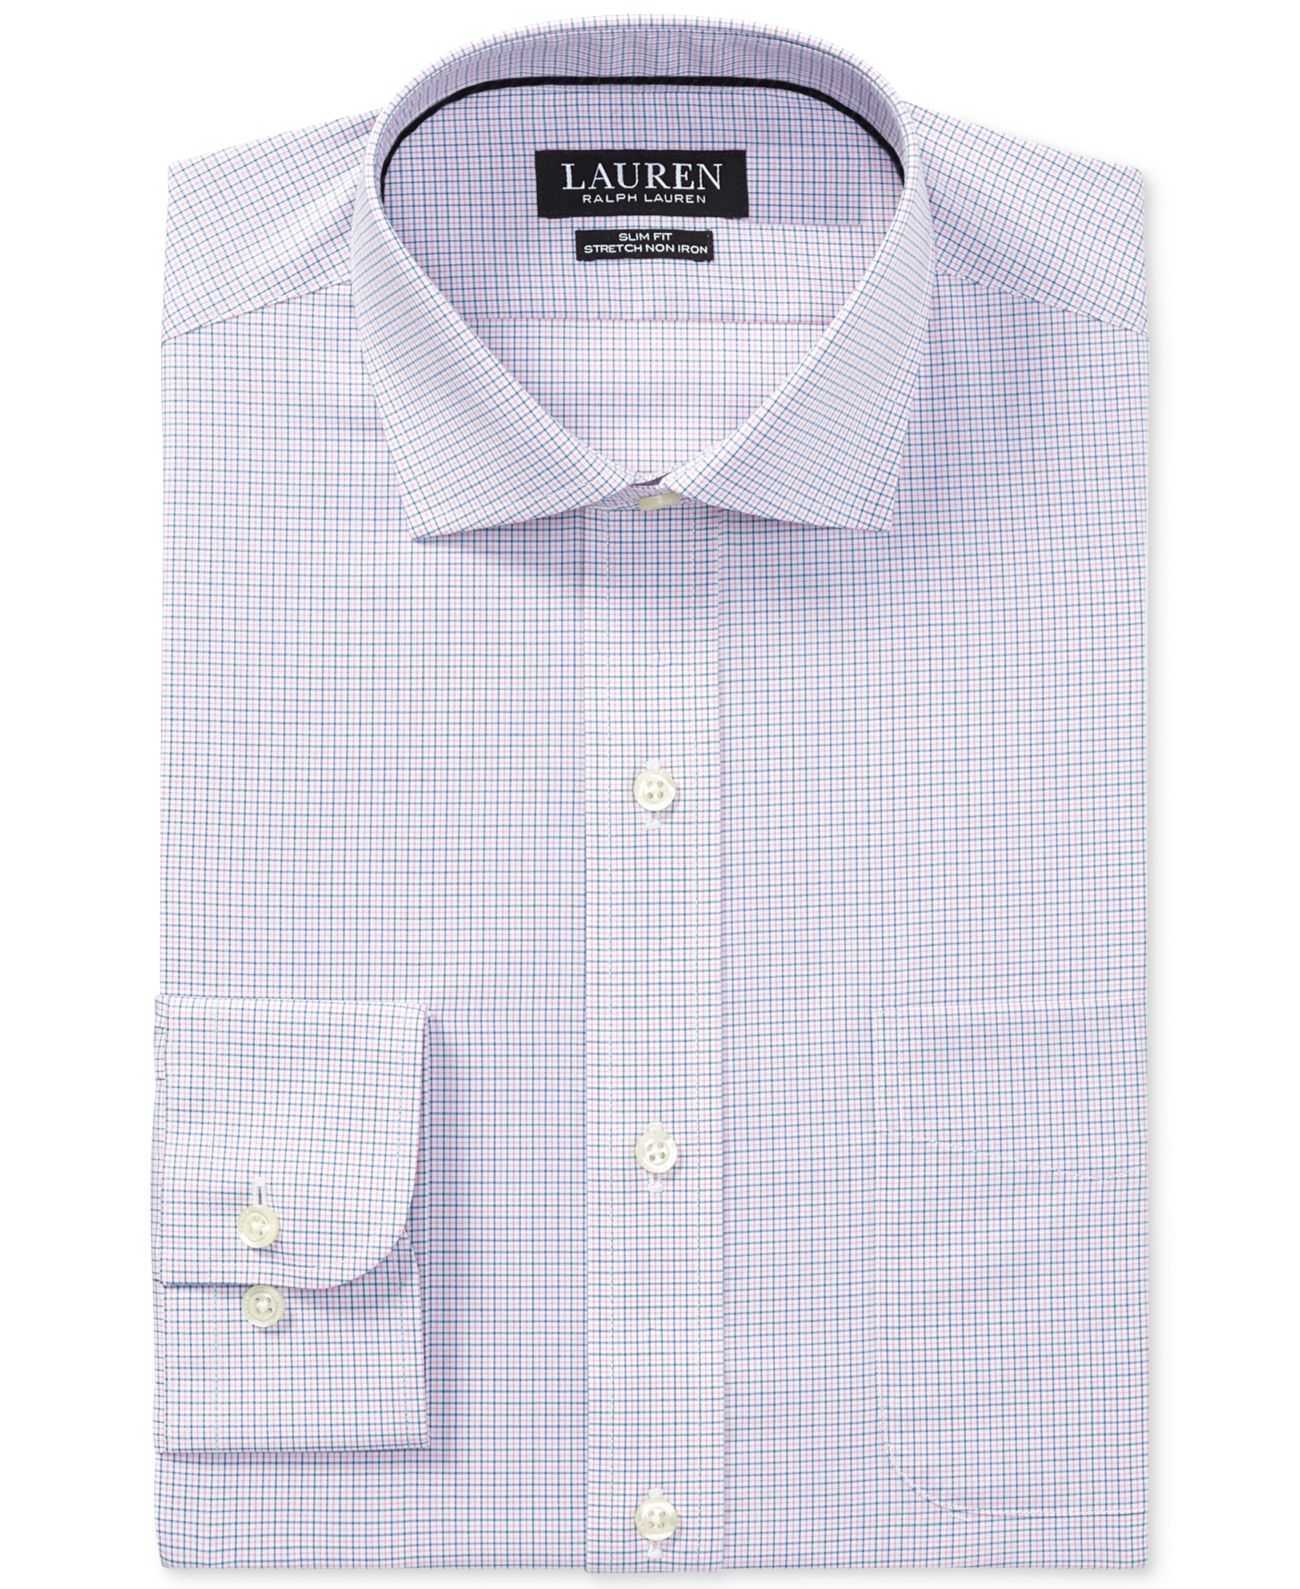 Ralph Lauren Men’s Dress Shirt (Pink/Blue, 17.5×36/37) - image 1 of 2